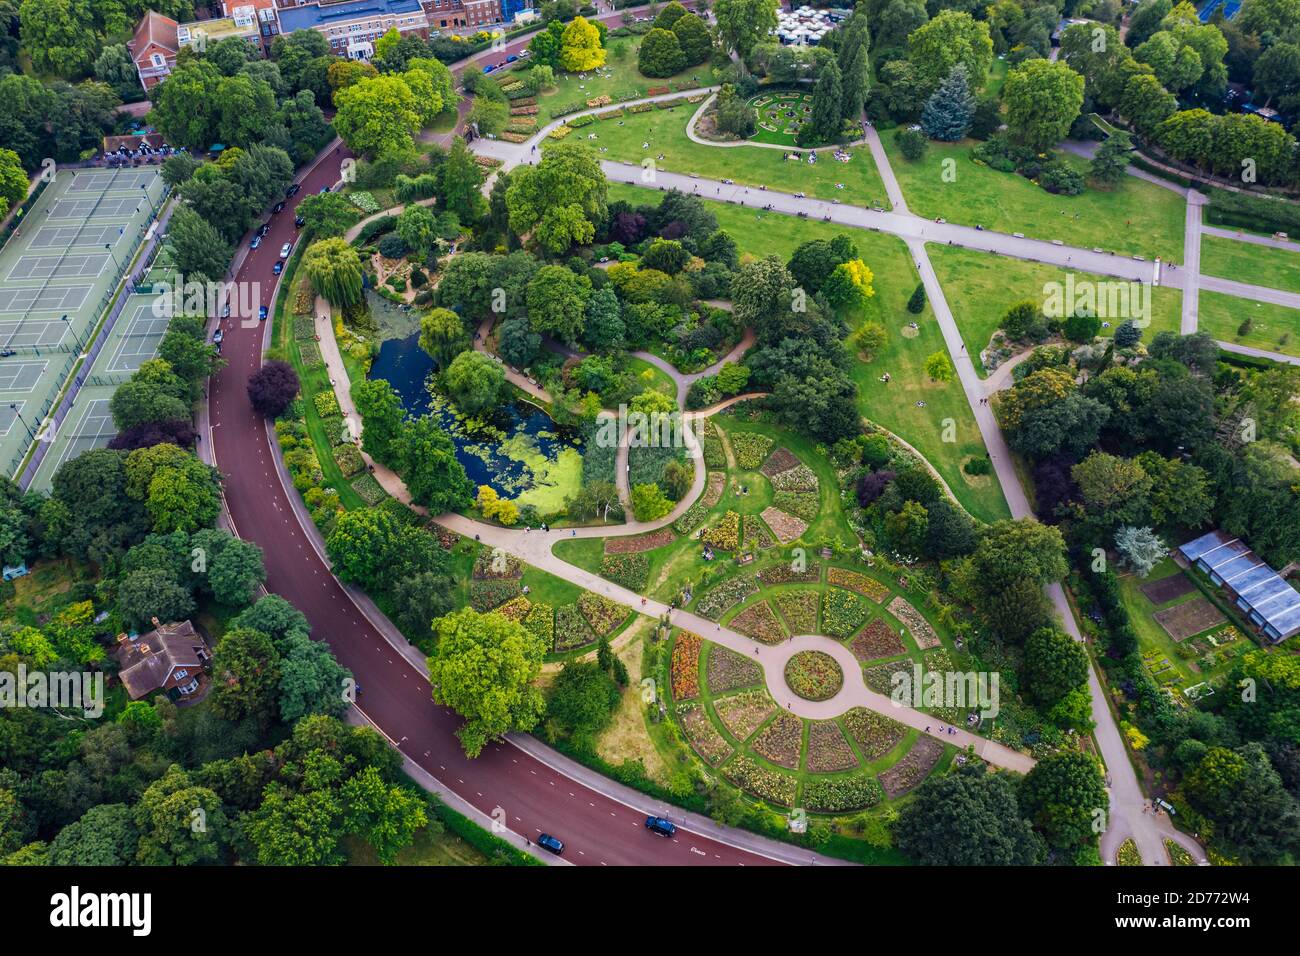 Luftaufnahme mit schönem Landschaftsdesign, UK England Regent's Park Draufsicht Landschaftsgarten Masterplan Stockfoto